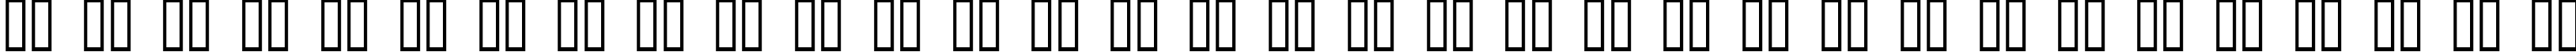 Пример написания русского алфавита шрифтом Chess Lucena